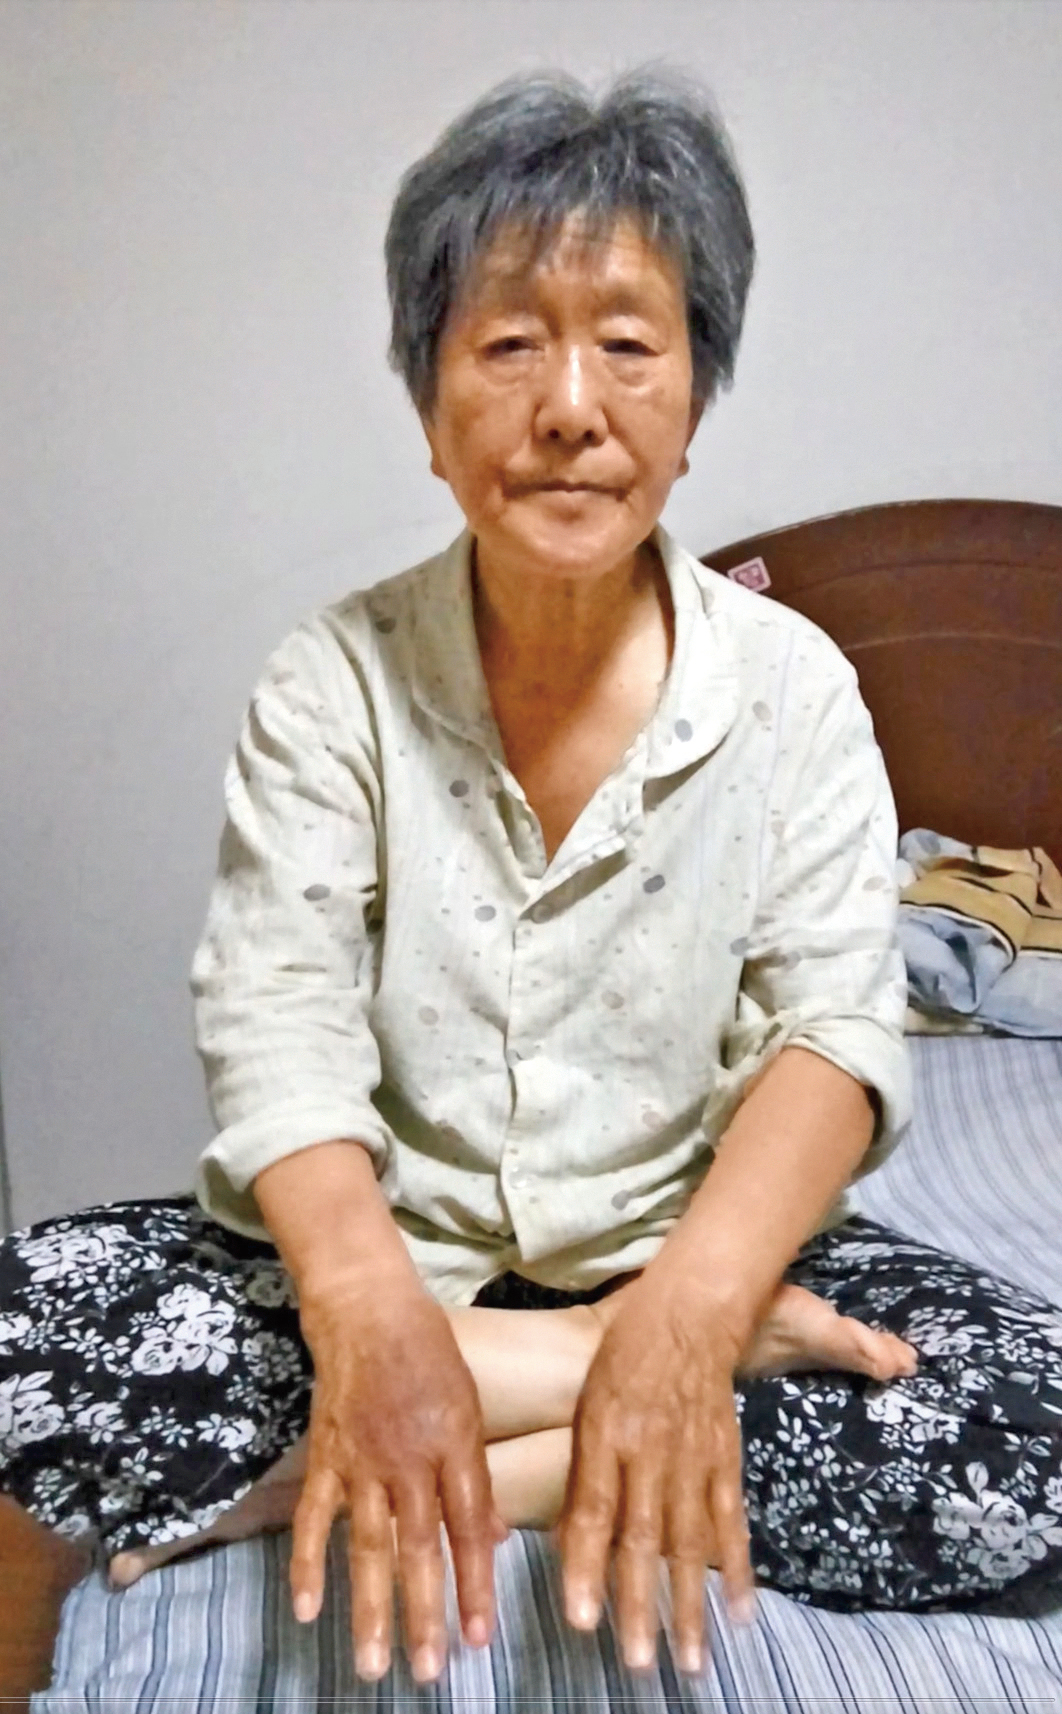 75歲的法輪功學員姜廣鳳被天津警察打嘴巴子，強制在誣蔑法輪功的所謂「三書」上按手印。  ,姜廣鳳的右手食指、中指、無名指，均 被警察掰得通紅、發黑和腫脹。（明慧網）